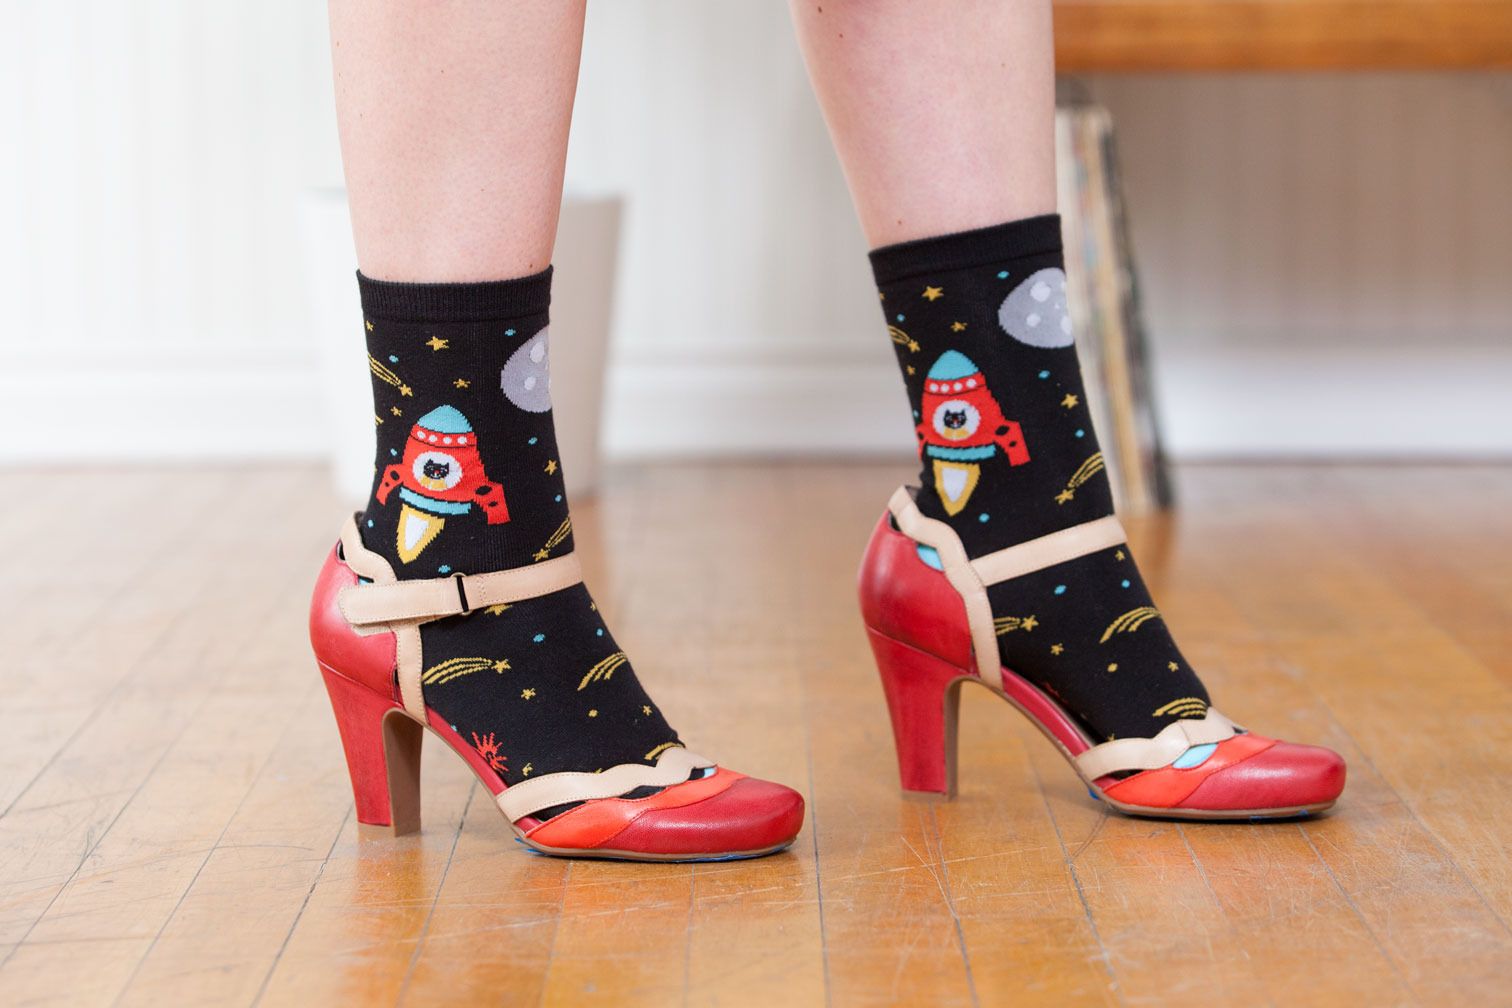 Space Kitten socks from Sock it To Me